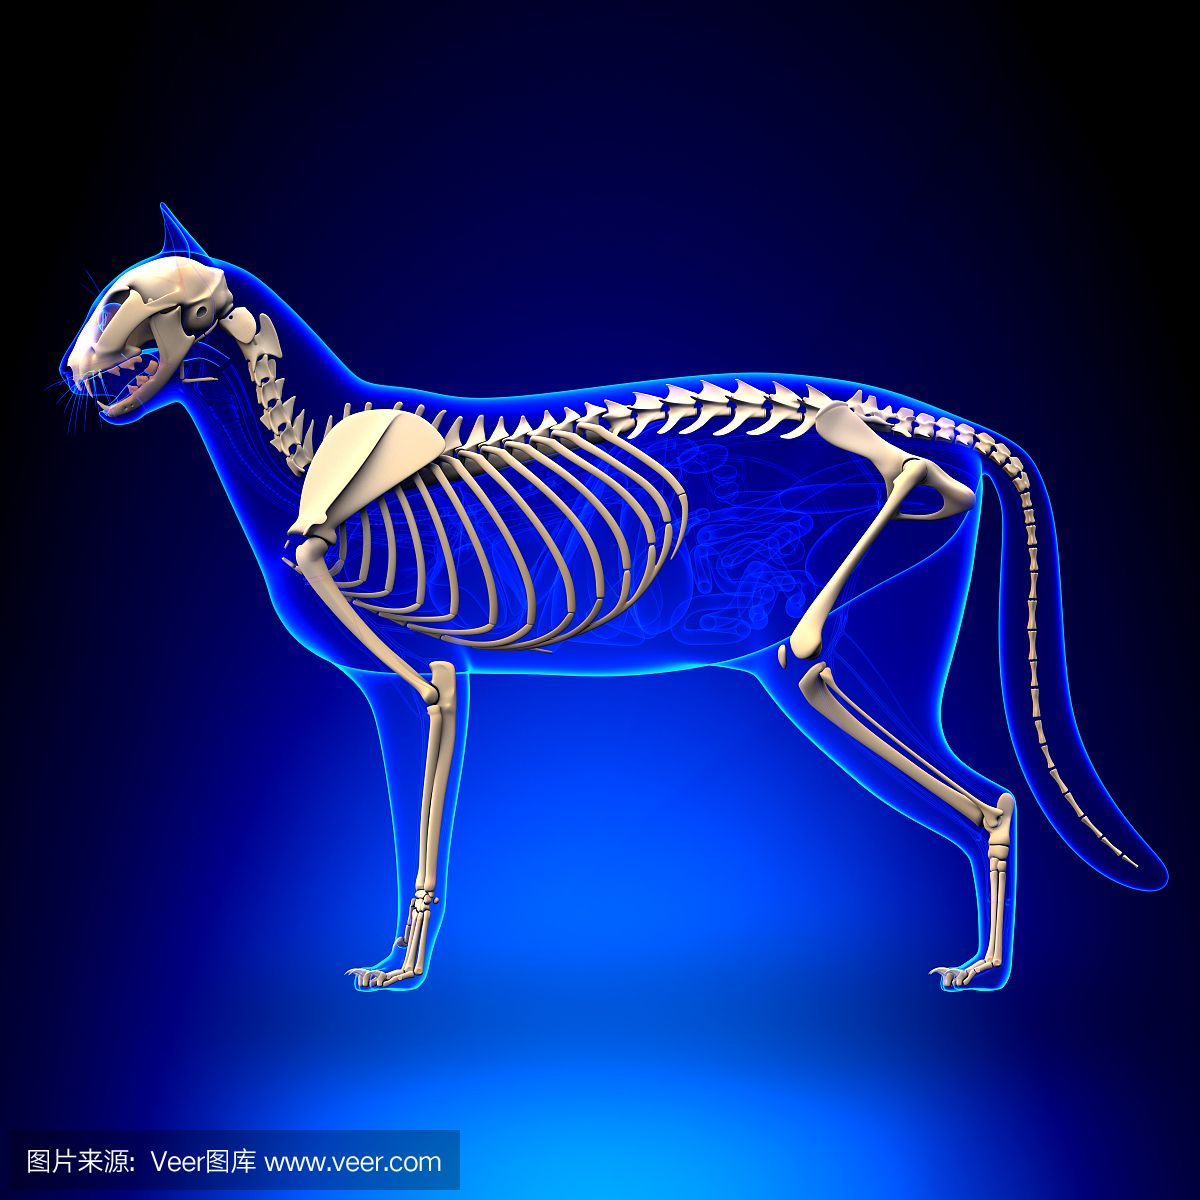 猫骨骼解剖 - 猫骨骼的解剖